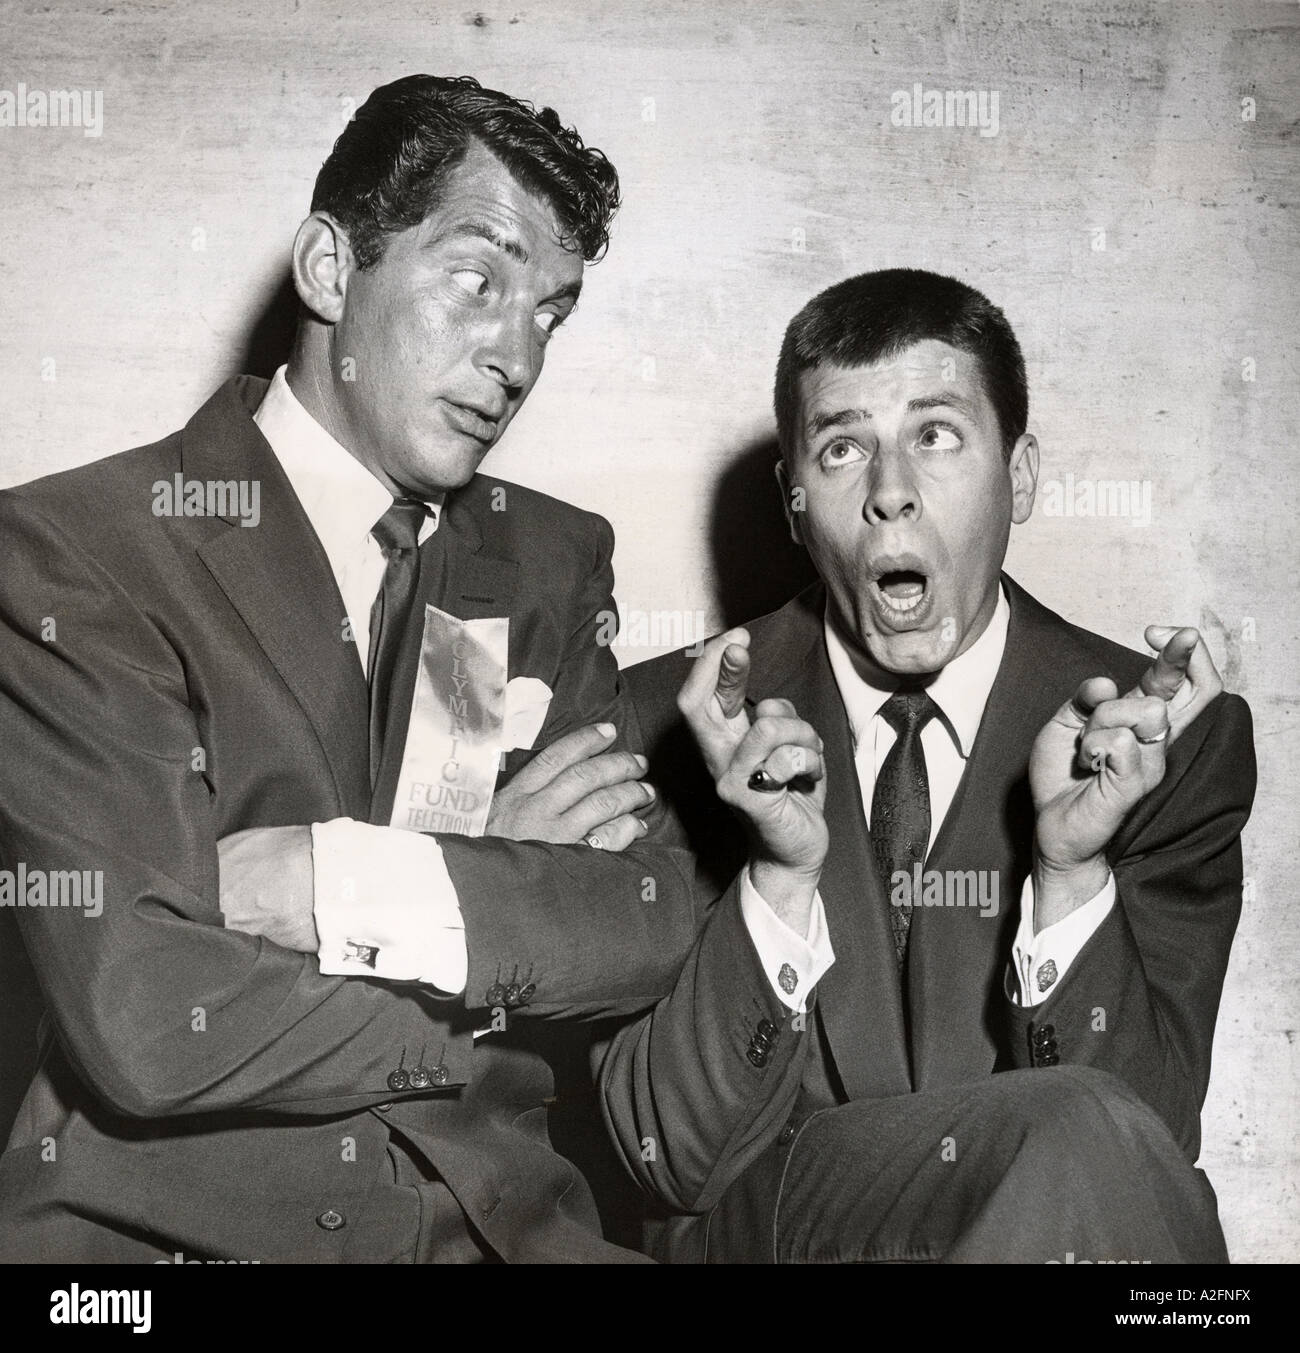 DEAN MARTIN à gauche avec Jerry Lewis quand ils étaient un duo comique du cinéma américain Banque D'Images